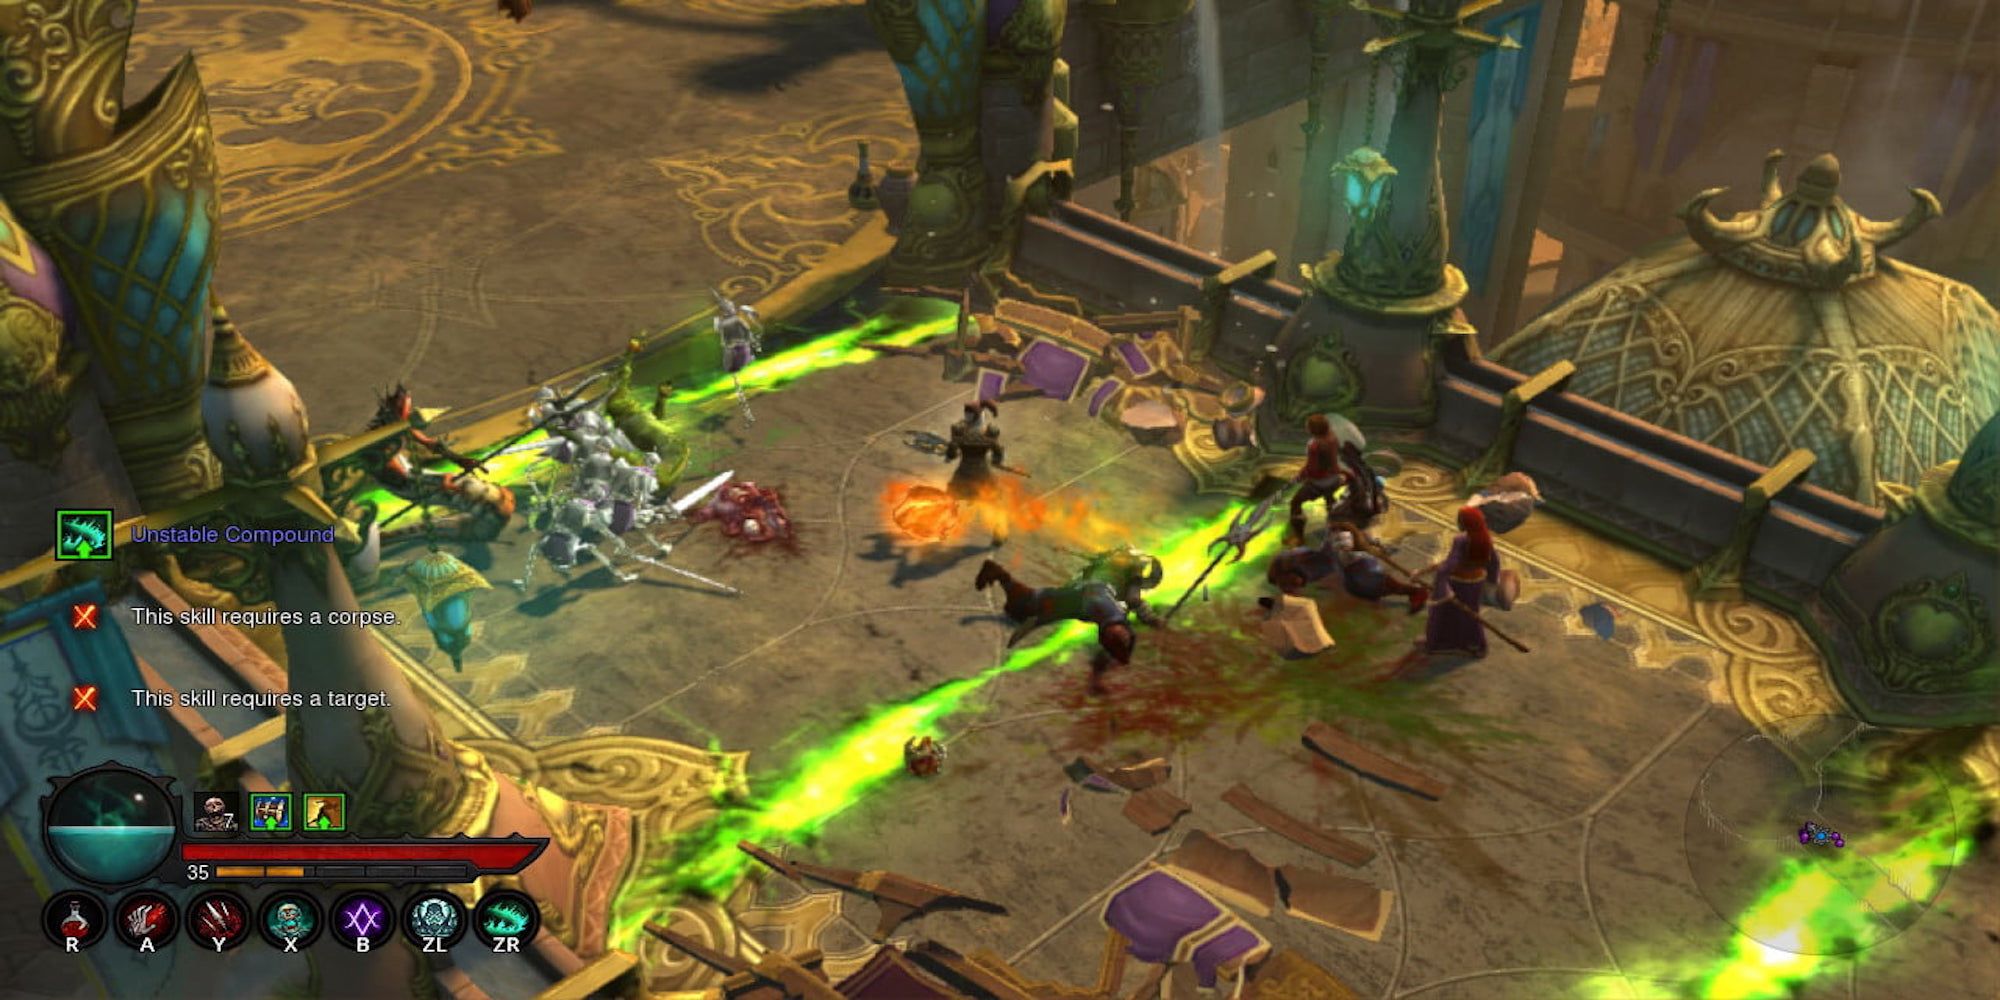 Fighting enemies in Diablo 3